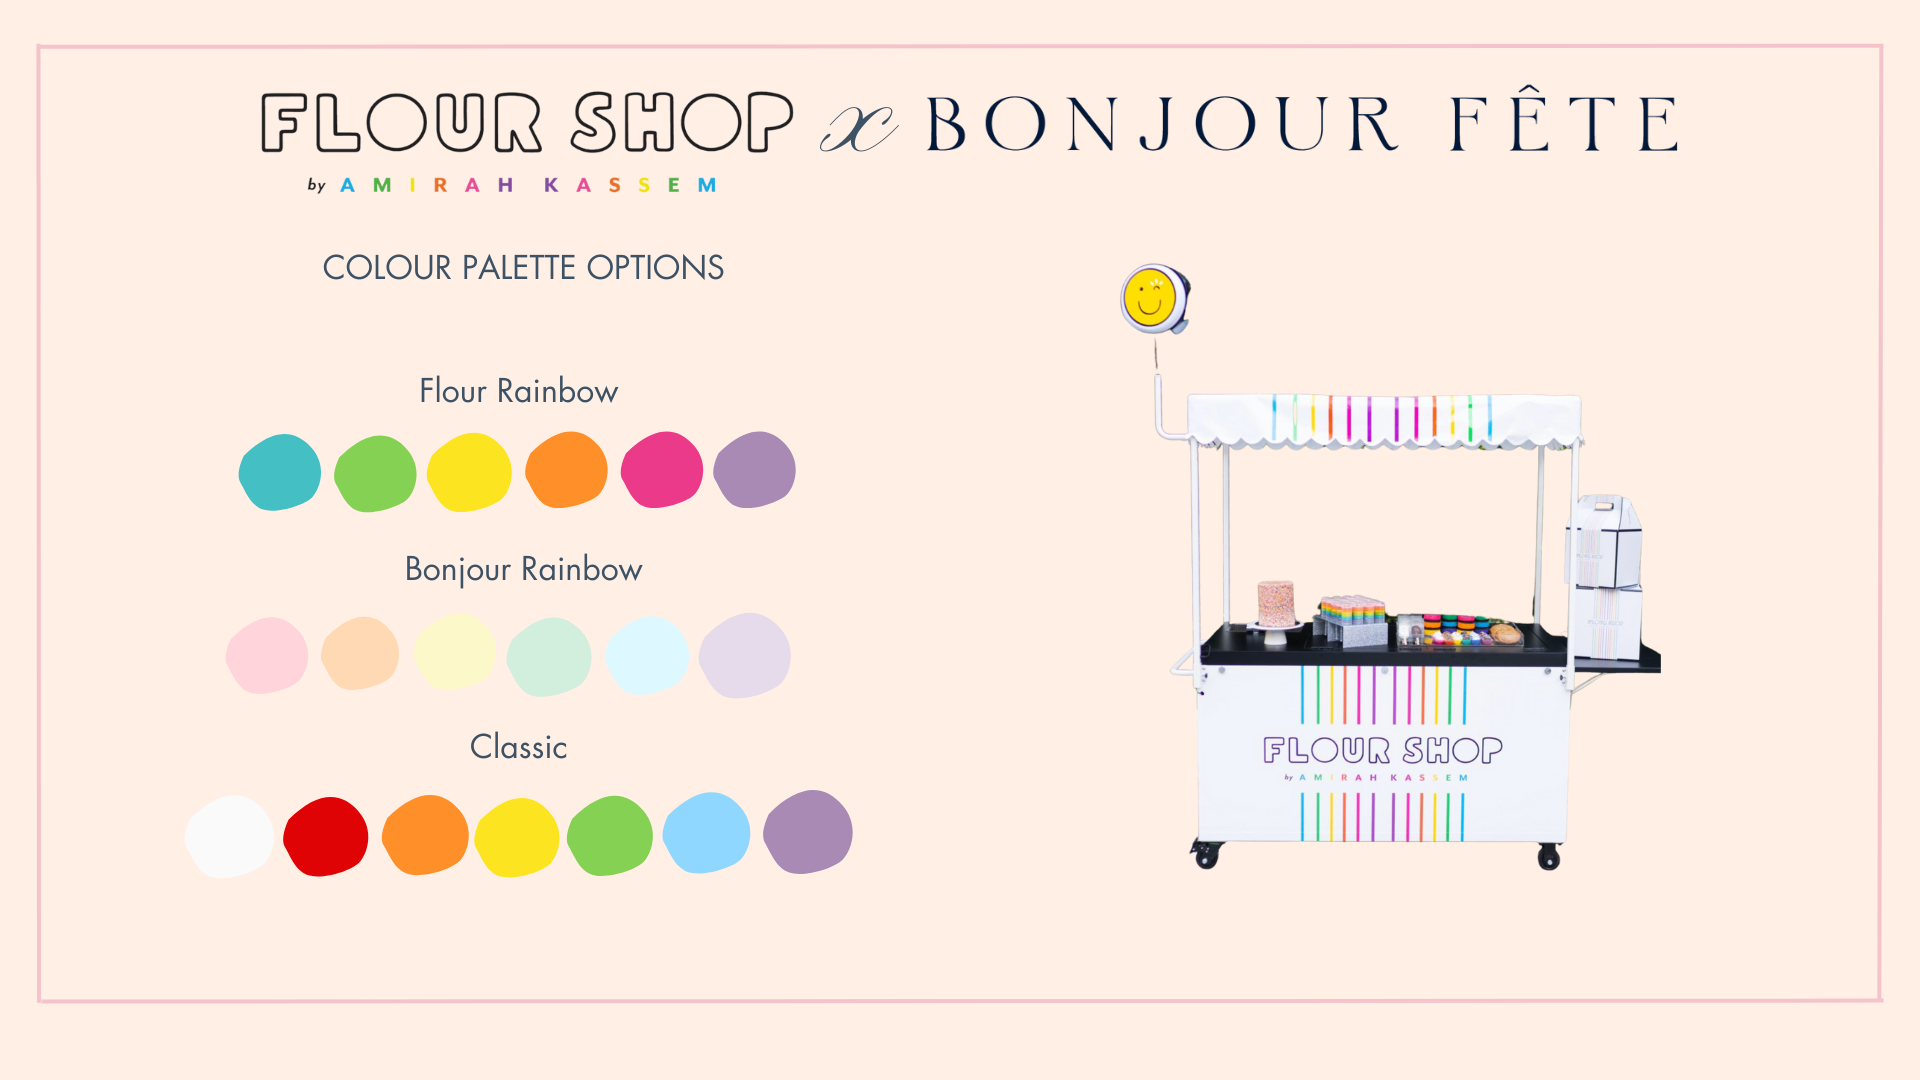 Bonjour Fête balloon garland colors for the Flour Shop dessert cart.